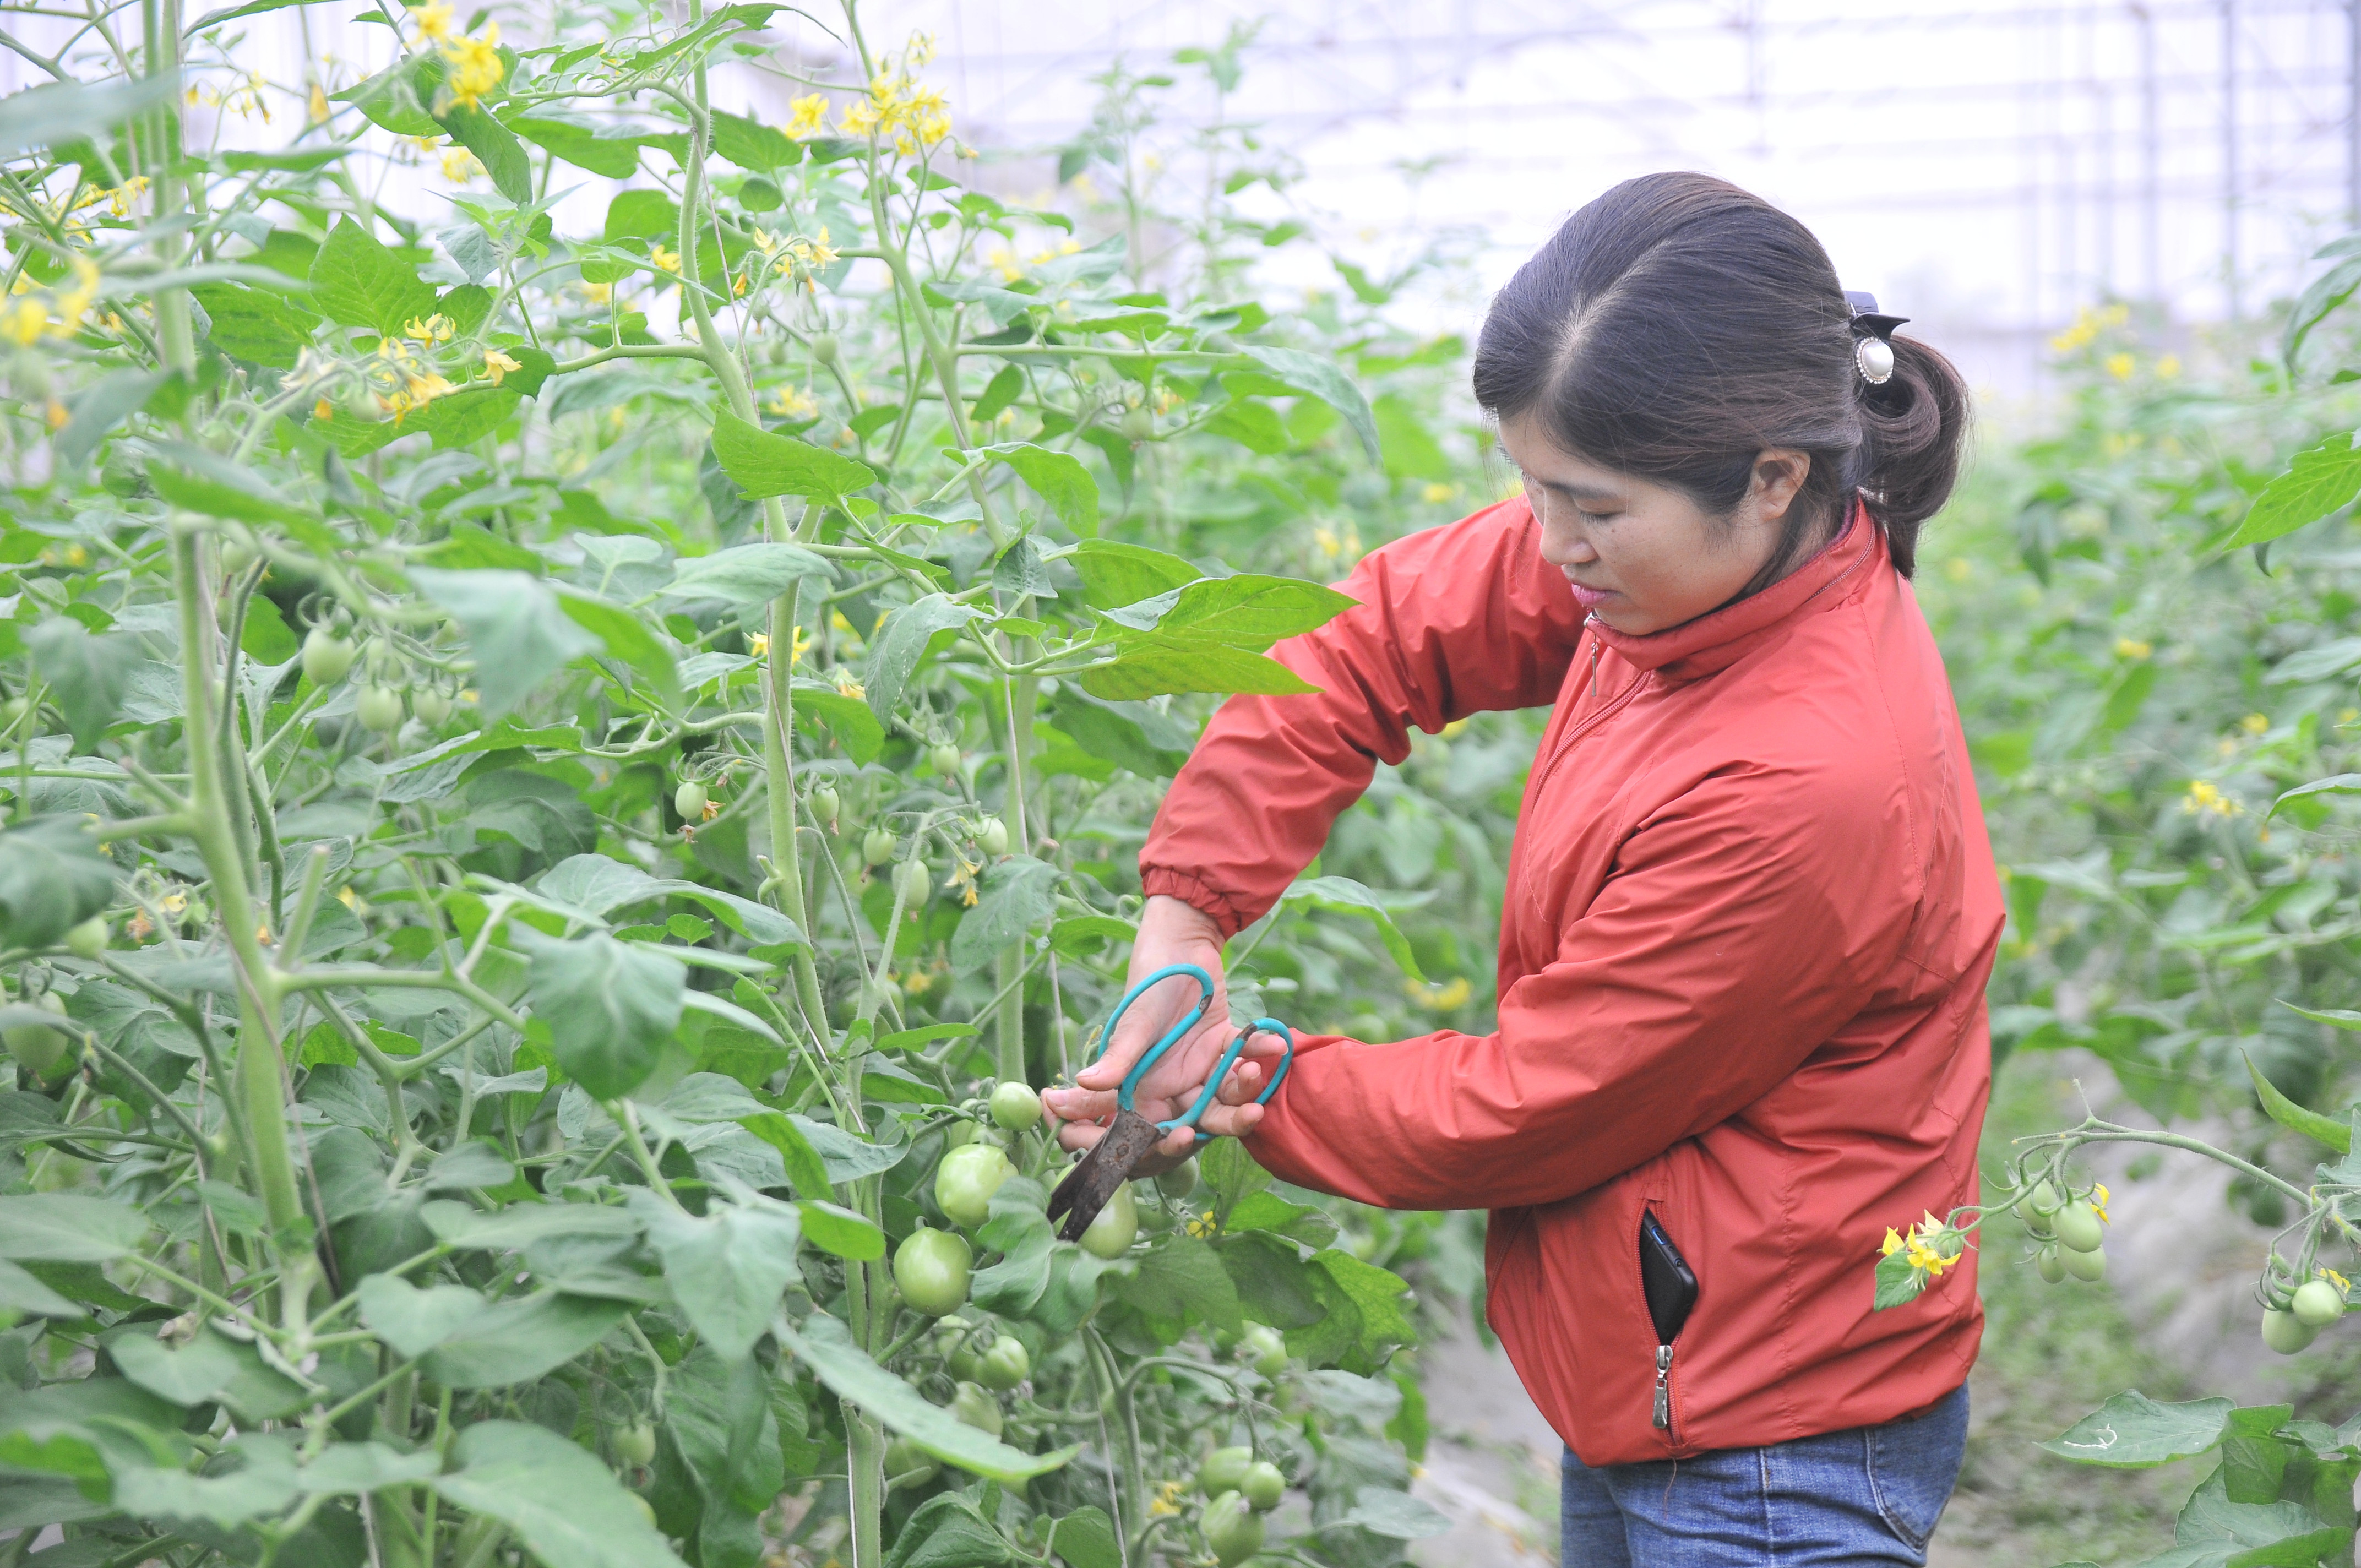 Mùa này, nhiều hộ dân có nhà lưới đã chọn các loại cây trồng ưa nhiệt độ cao như cà chua leo, dưa chuột, dưa lưới để sản xuất. Ảnh: TĐ